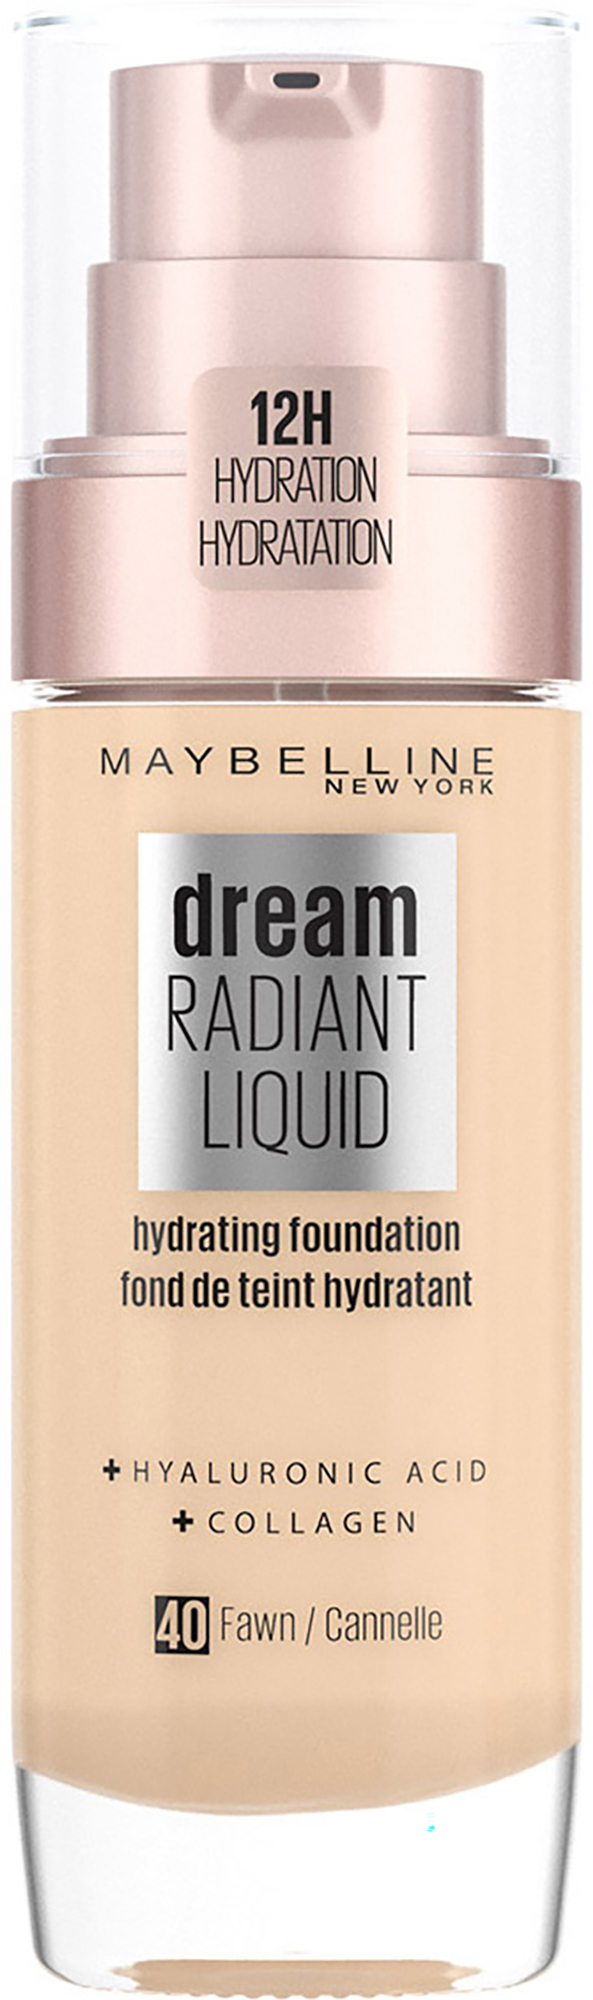 Maybelline Dream Satin Liquid Foundation 040 Fawn